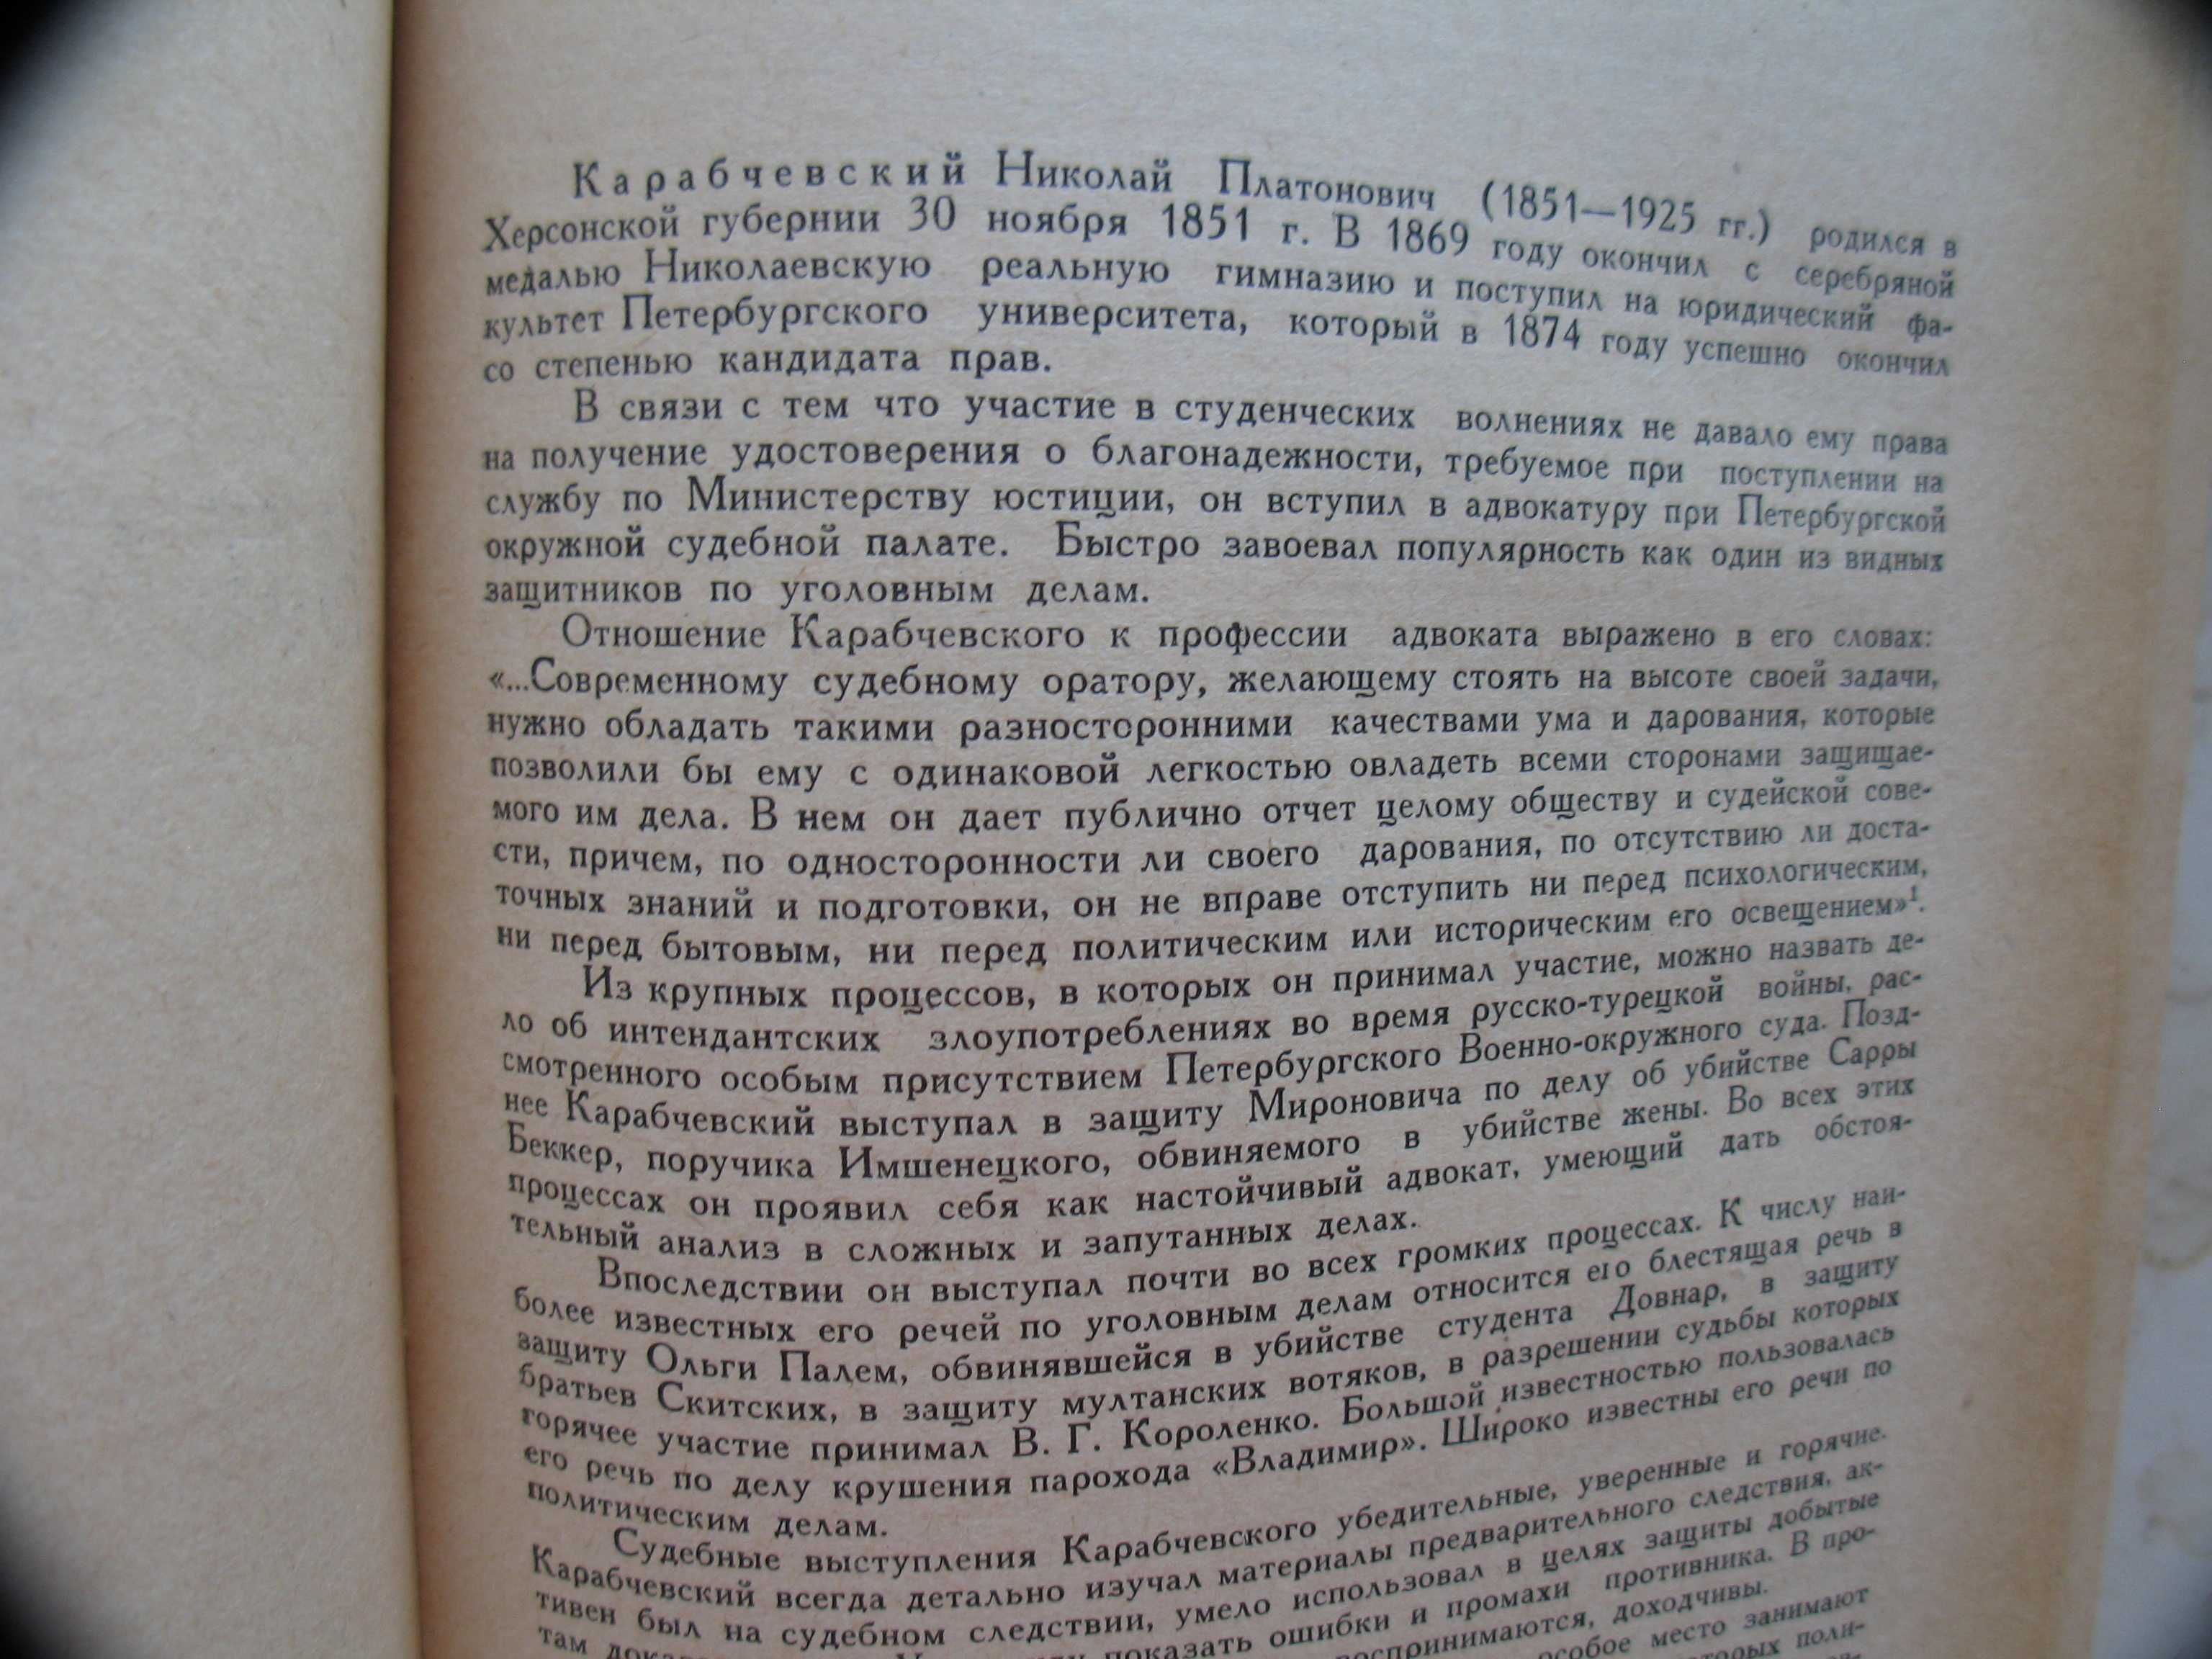 "Судебные речи известных русских юристов" сборник, 1957 год